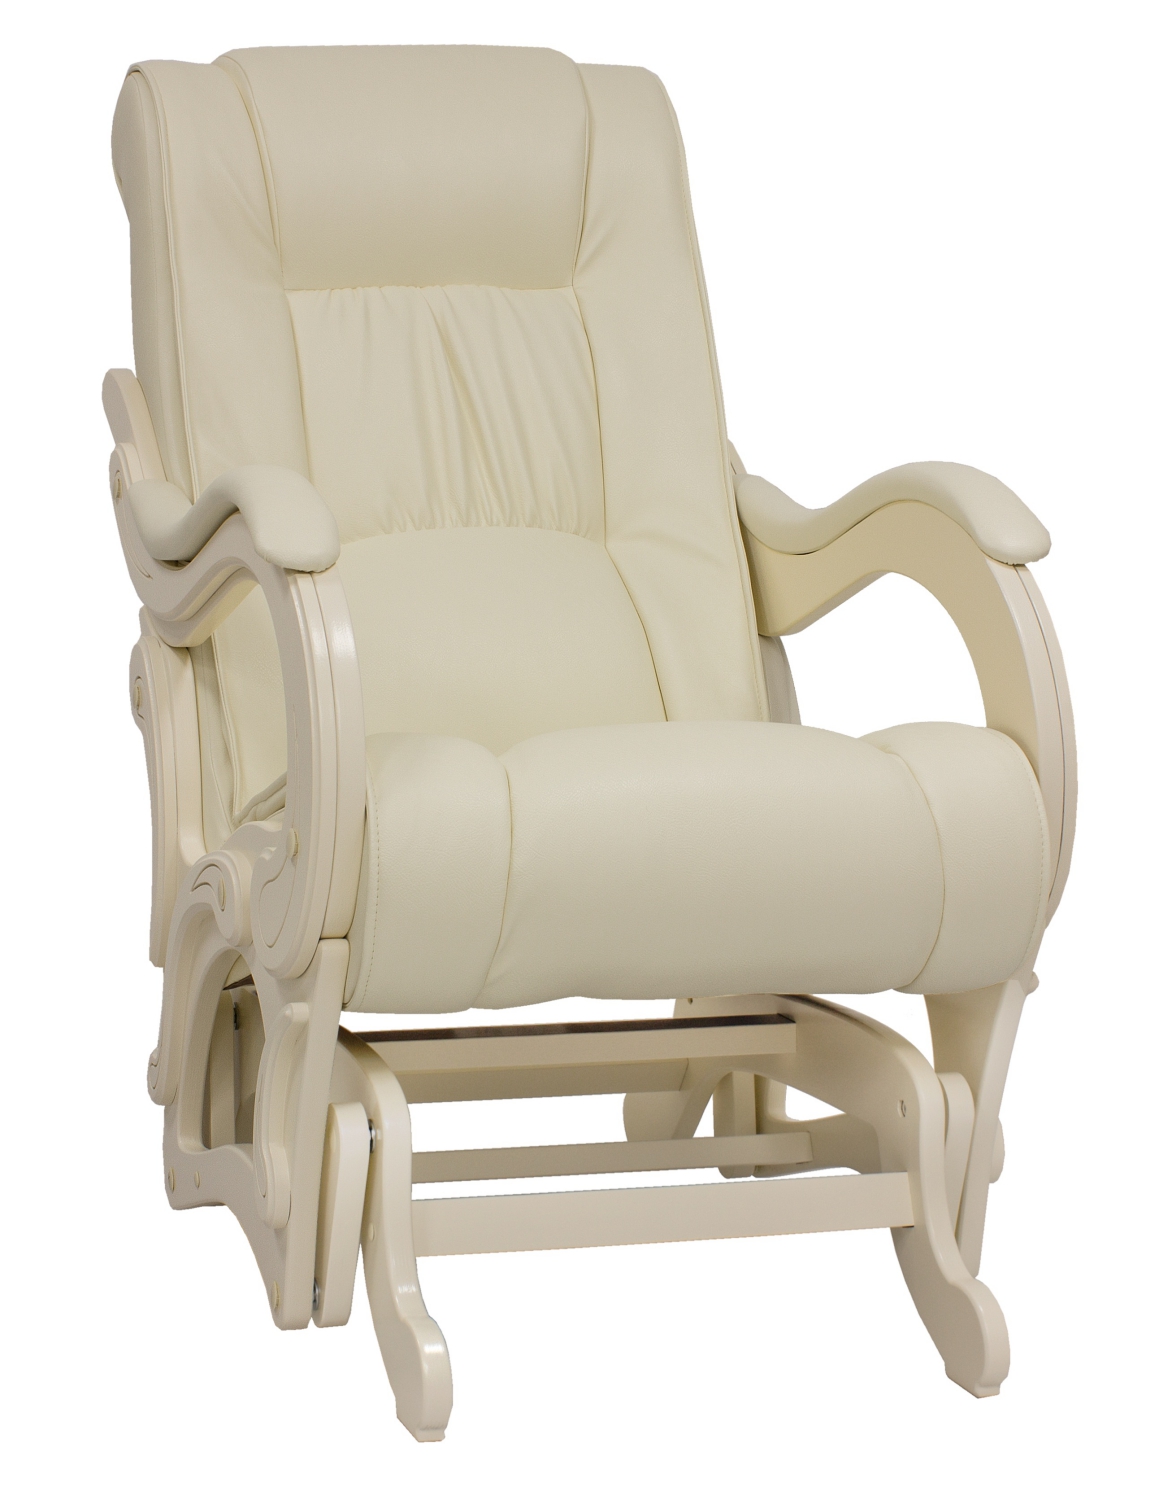 Кресло-качалка глайдер модель 78 с подлокотниками фото 1